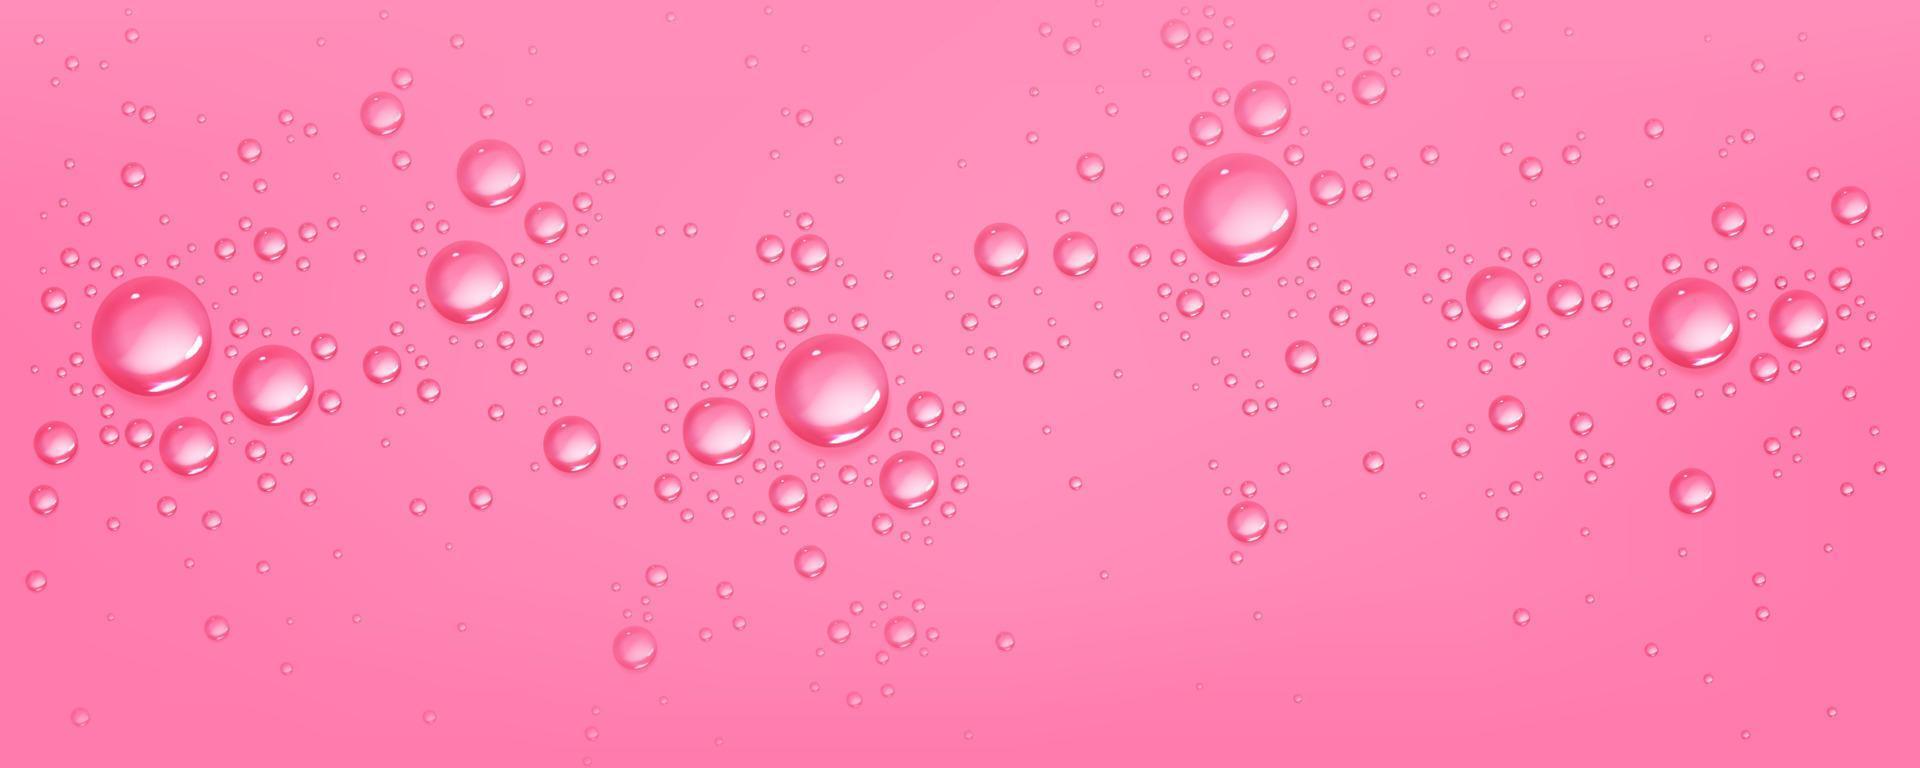 vatten droppar på rosa bakgrund, sfärisk bubblor vektor